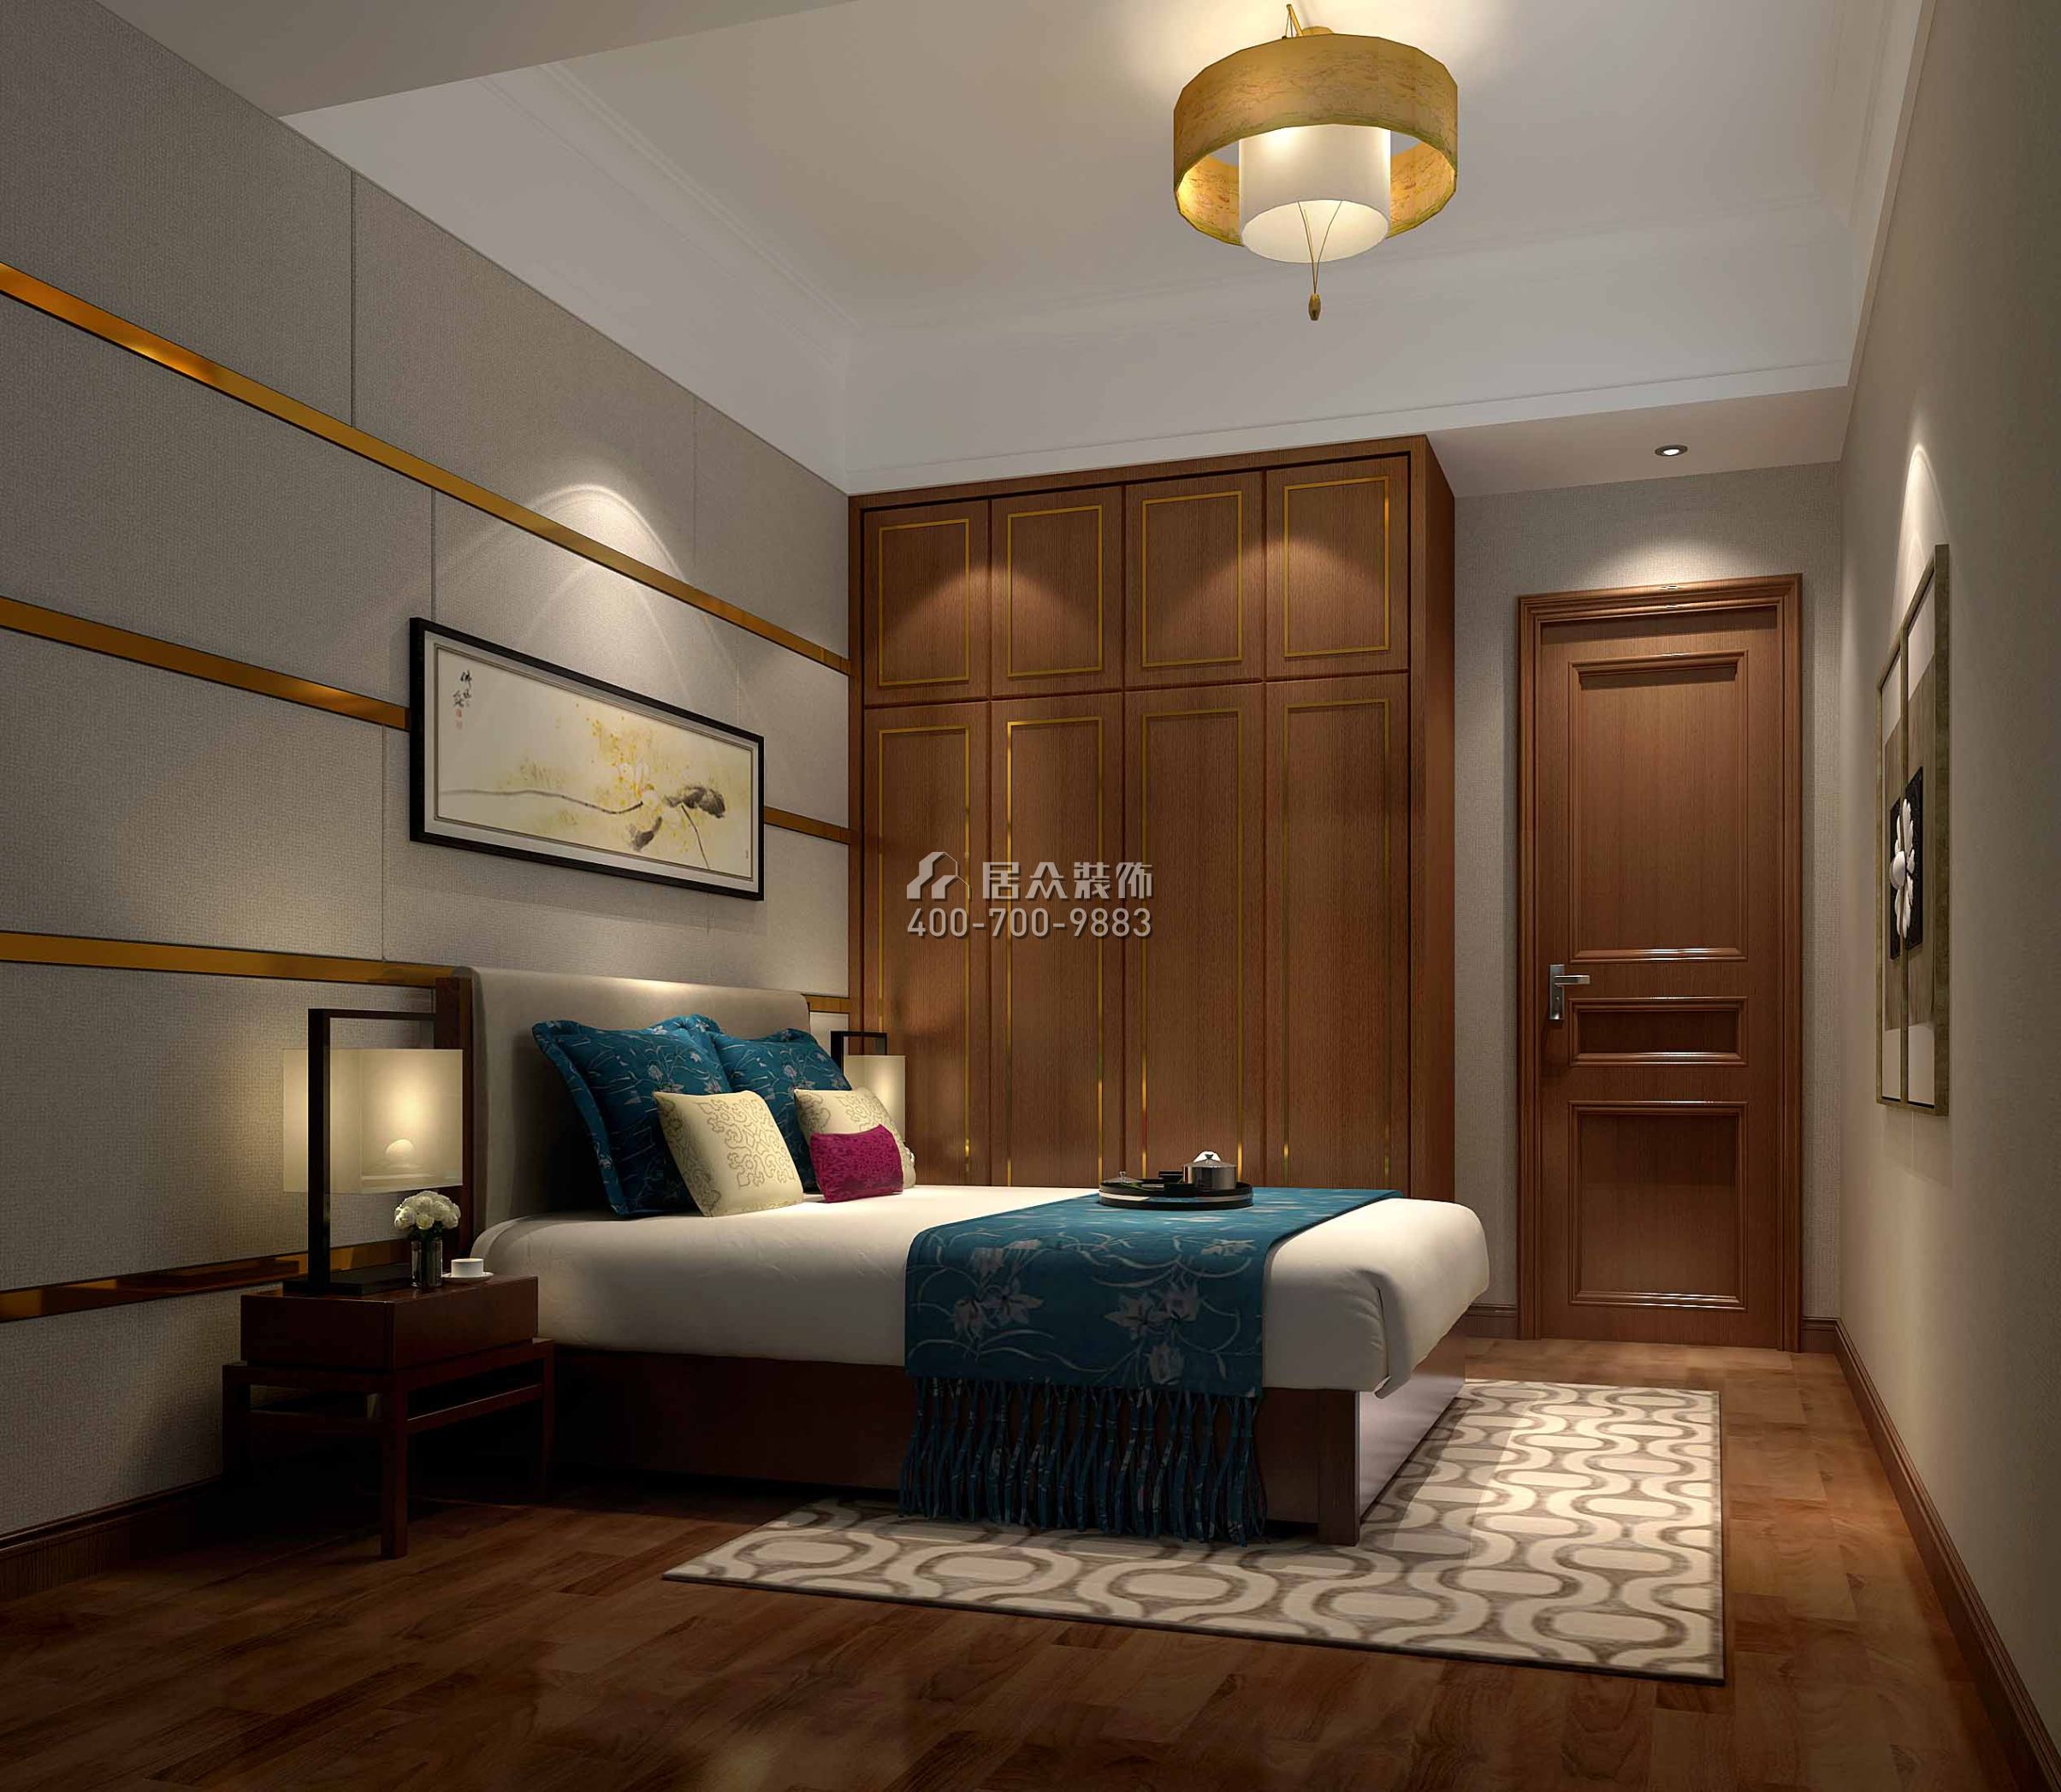 幸福城二期150平方米中式风格平层户型卧室装修效果图